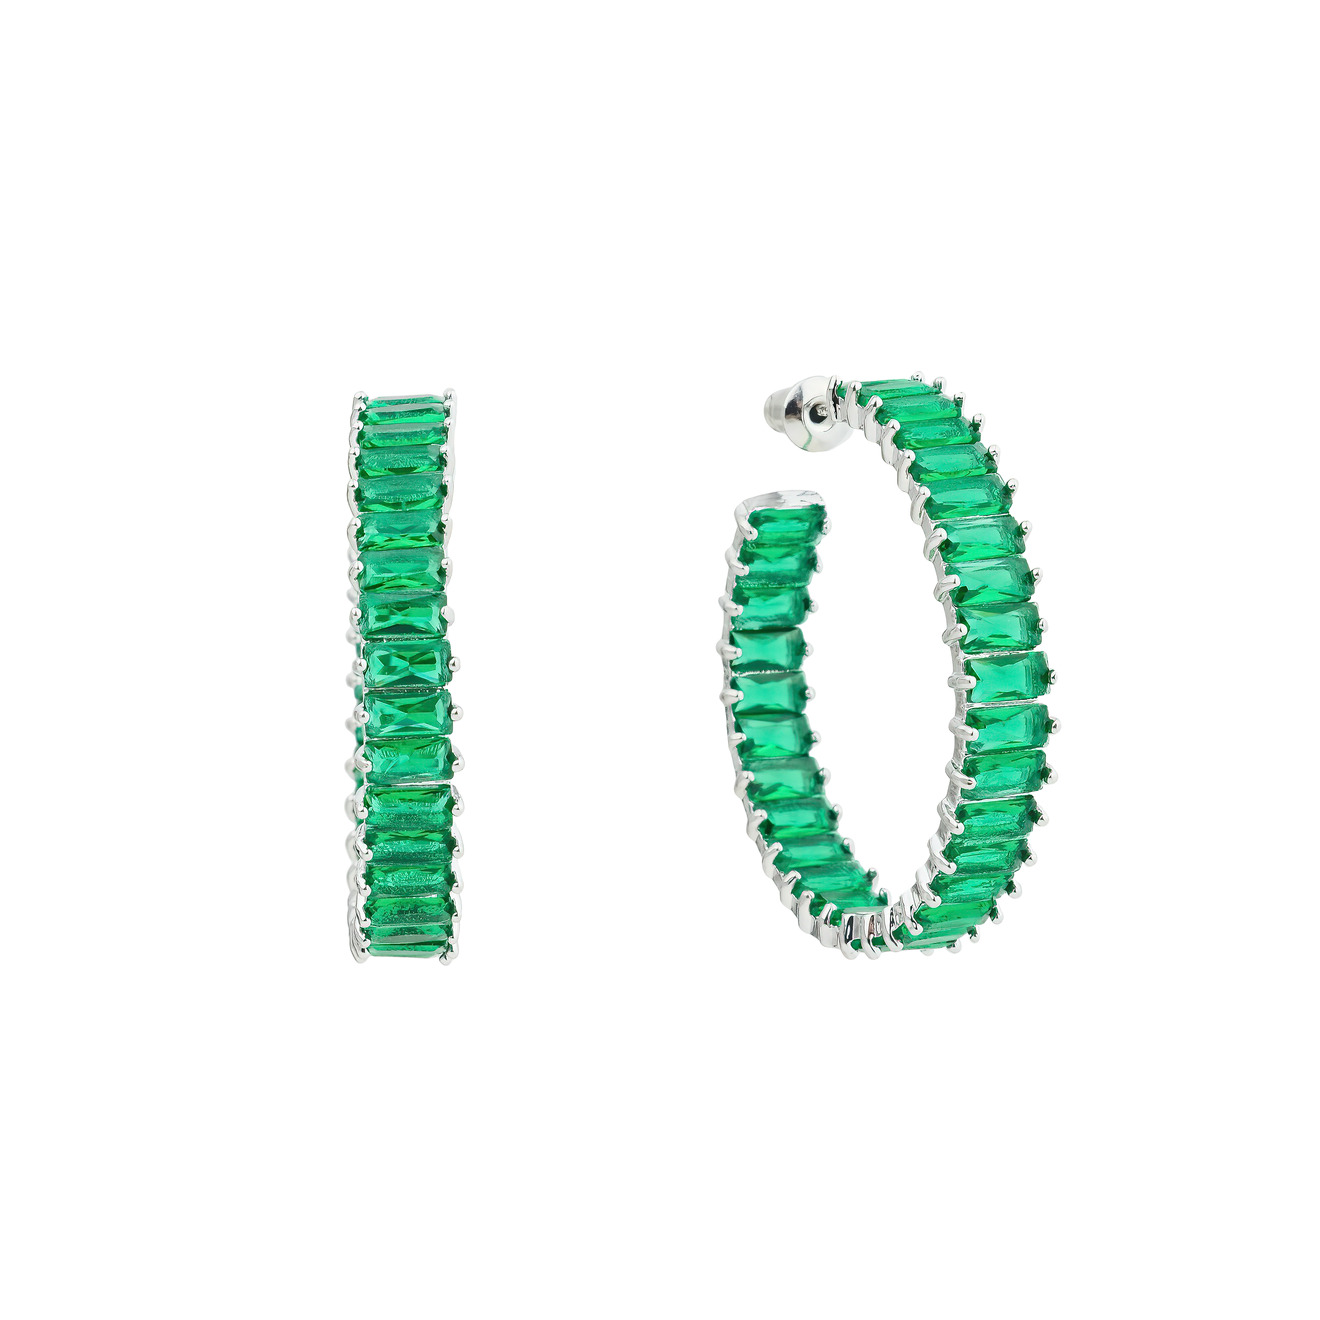 Herald Percy Серьги-кольца с зелеными кристаллами